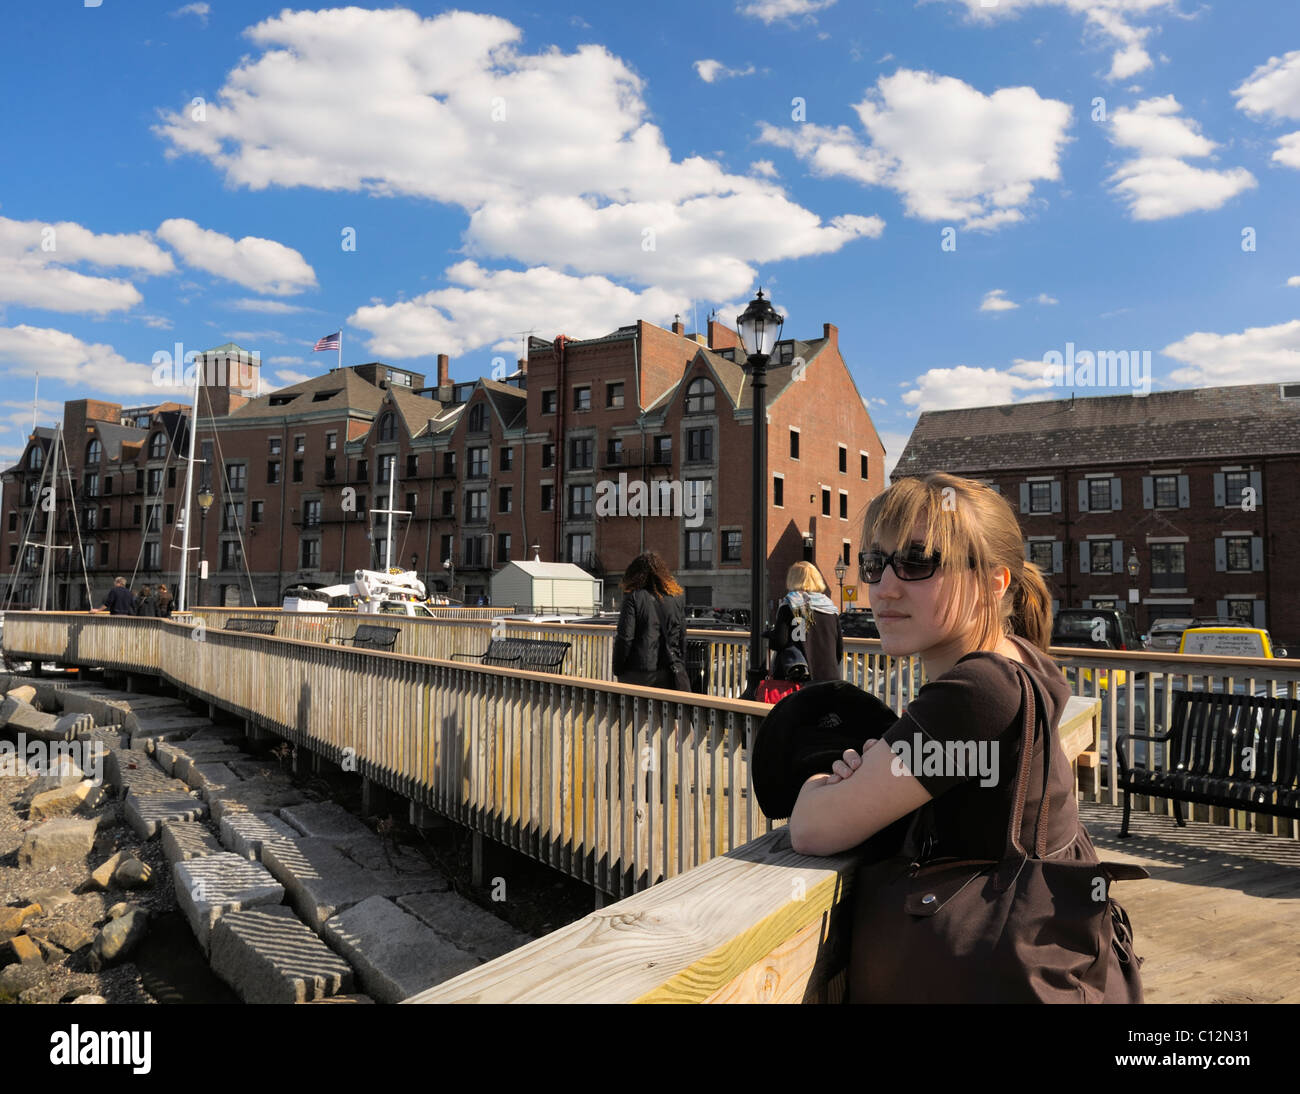 Jolie blonde adolescente de 16 ans regarde sur le port de Boston Le Port de Boston, Boston, Massachusetts, 2009. Parution du modèle. Banque D'Images